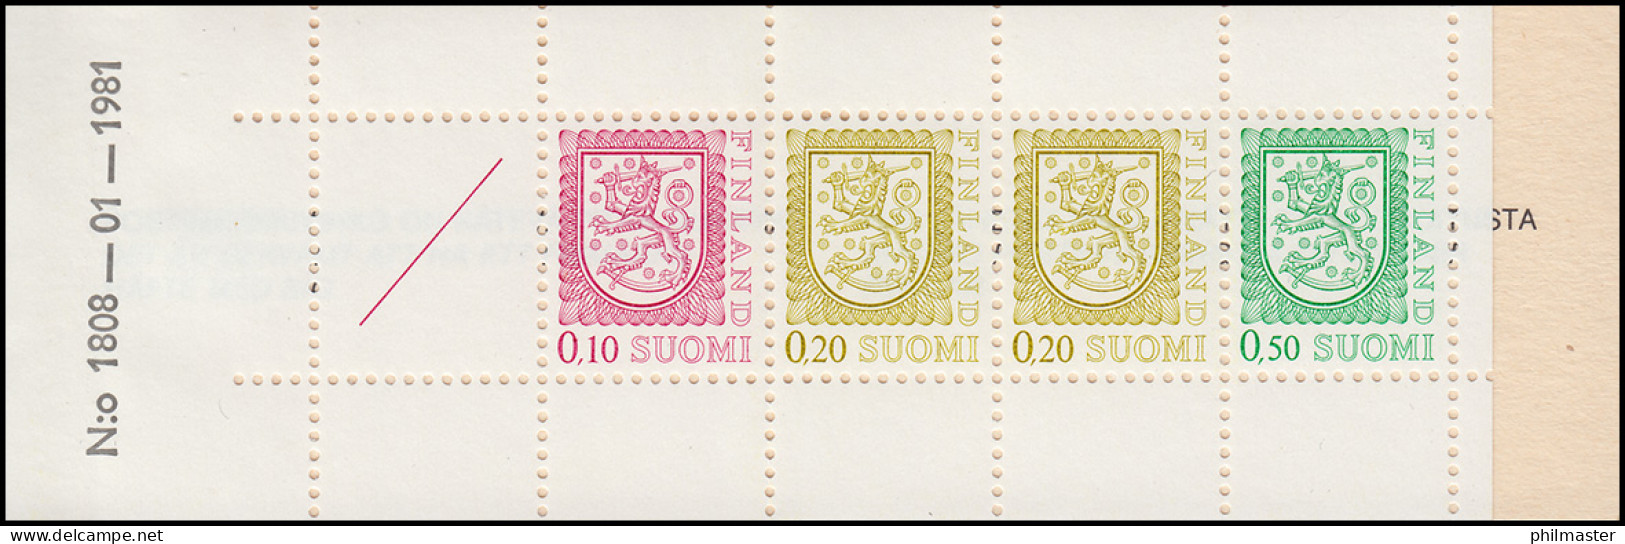 Finnland Markenheftchen 10I Staatswappen 1978, ** Postfrisch - Carnets